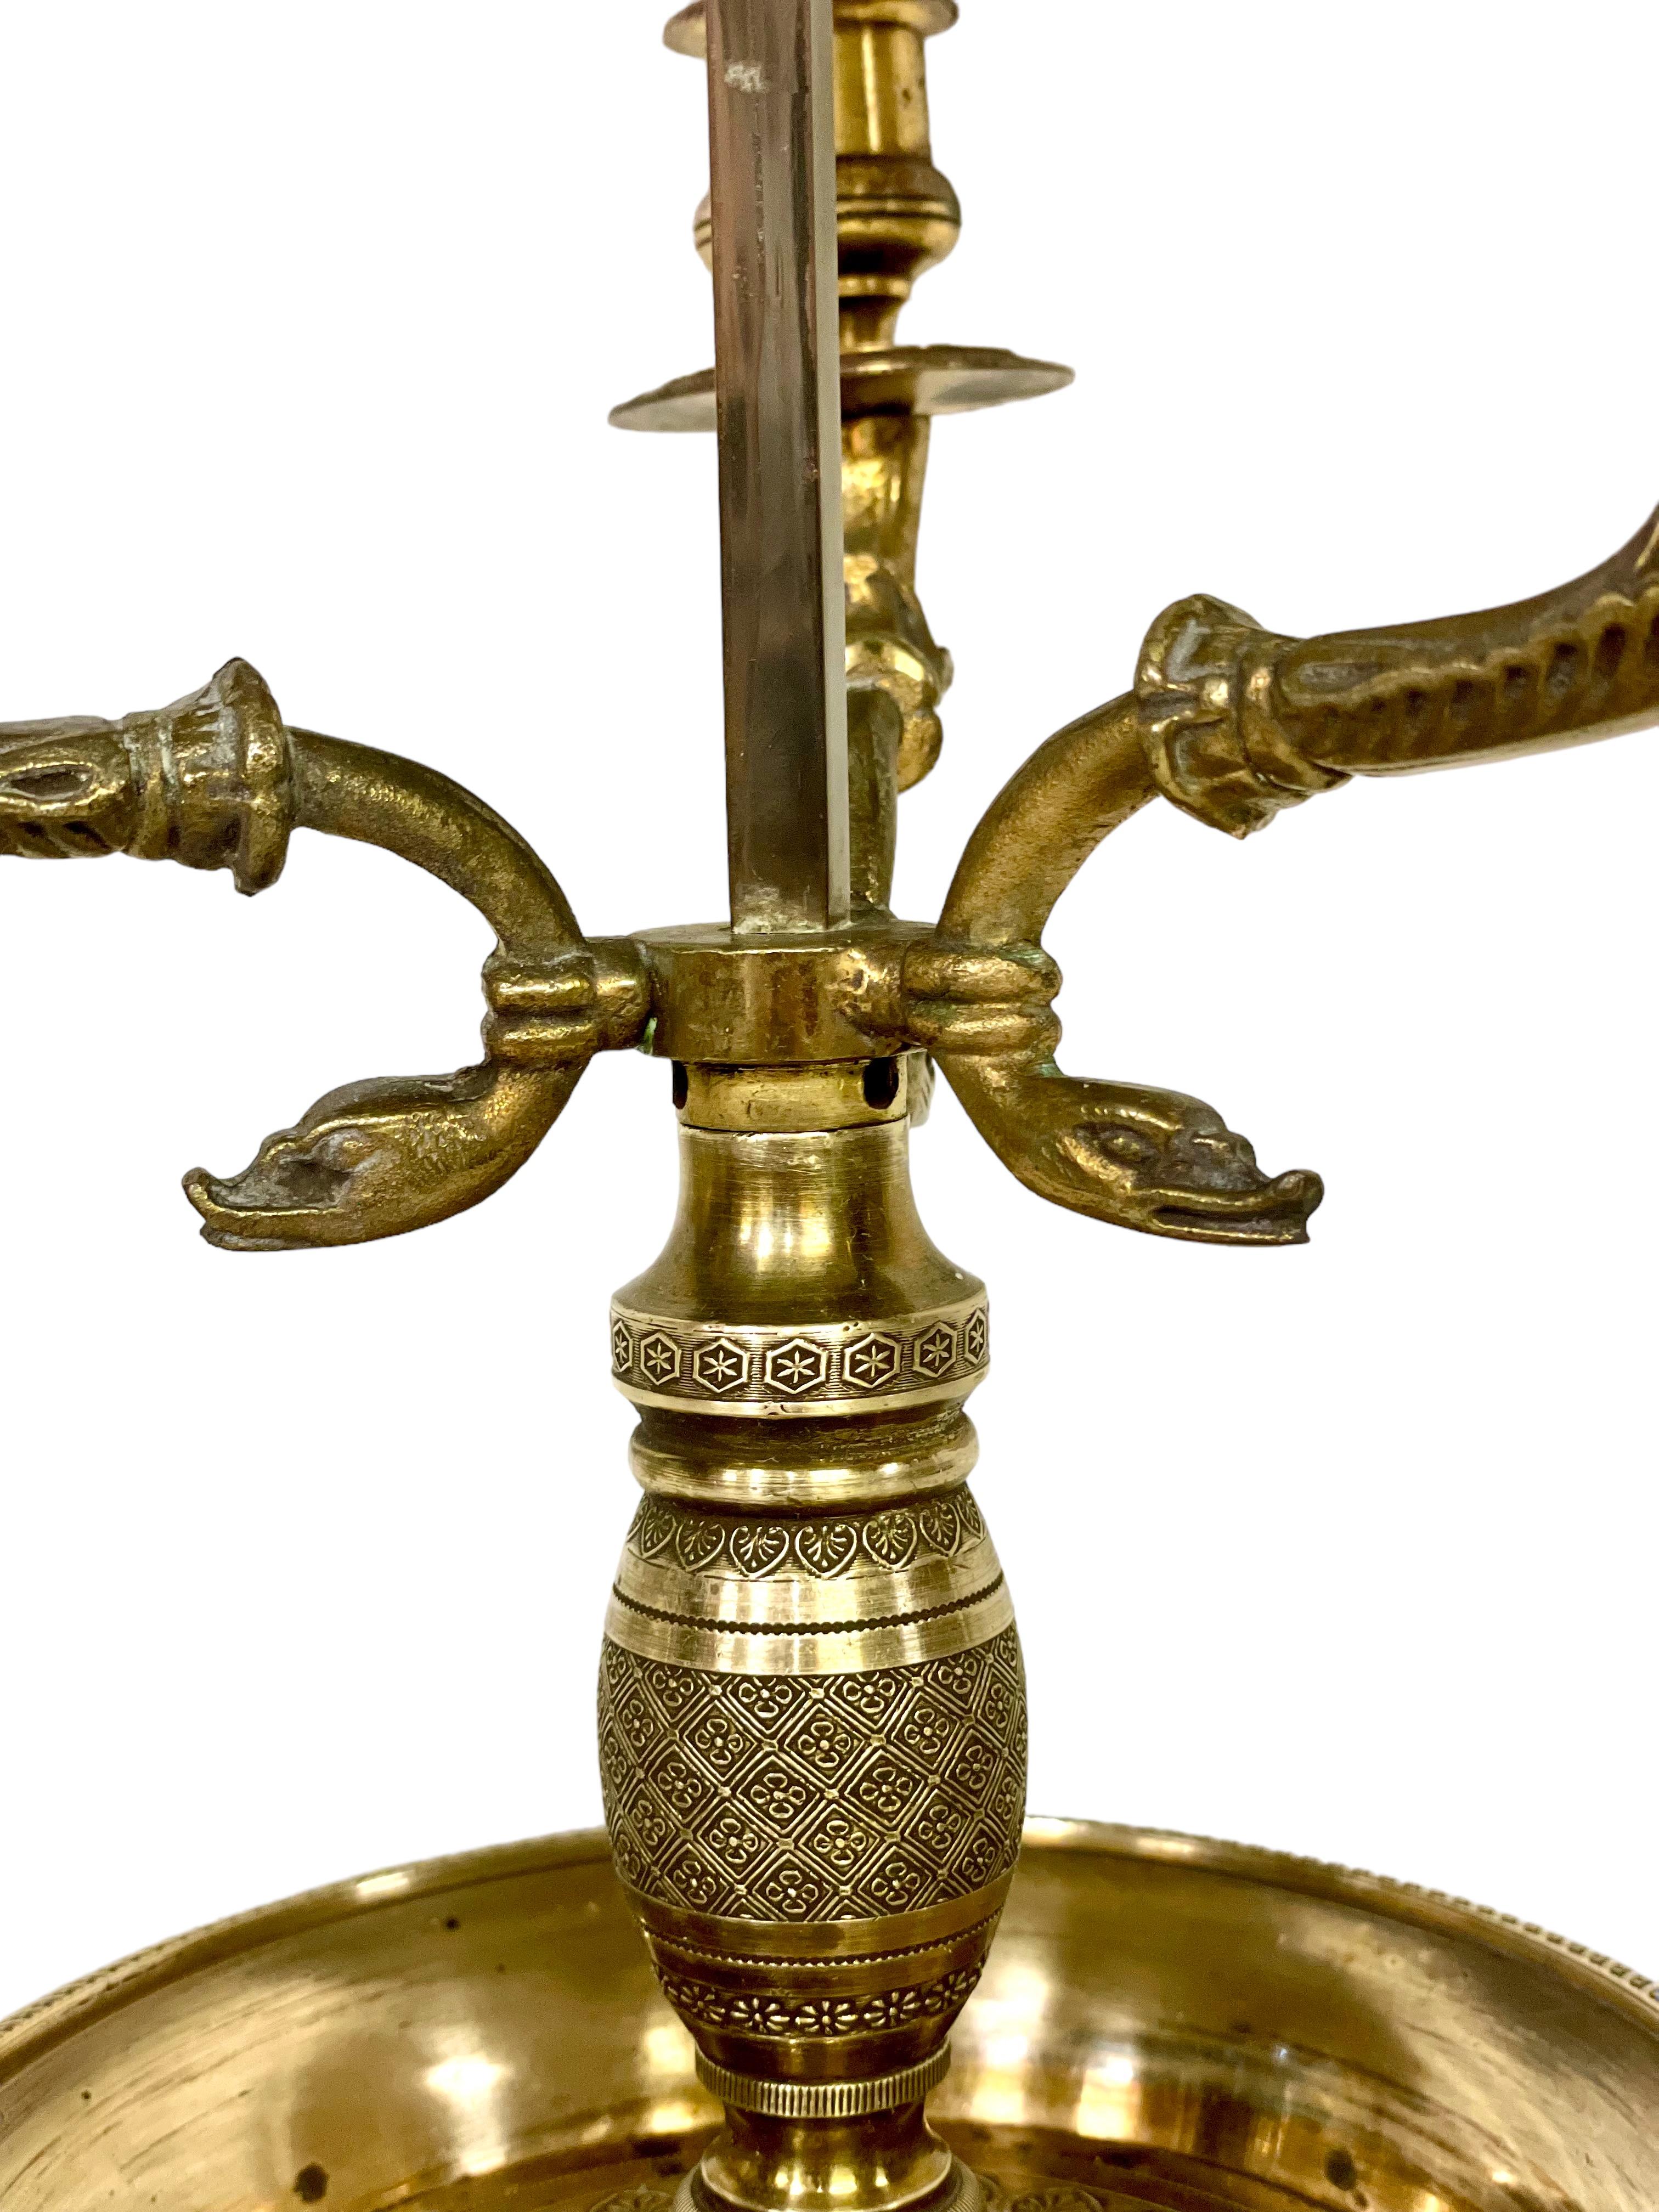 Très élégante lampe de table 'Bouillotte' de style Empire du 19ème siècle en bronze doré, éclairée par trois bras curvilignes en 'tête de cygne' et surmontée d'un abat-jour en métal laqué vert (tole) orné d'une frise de feuilles de laurier. Dotée